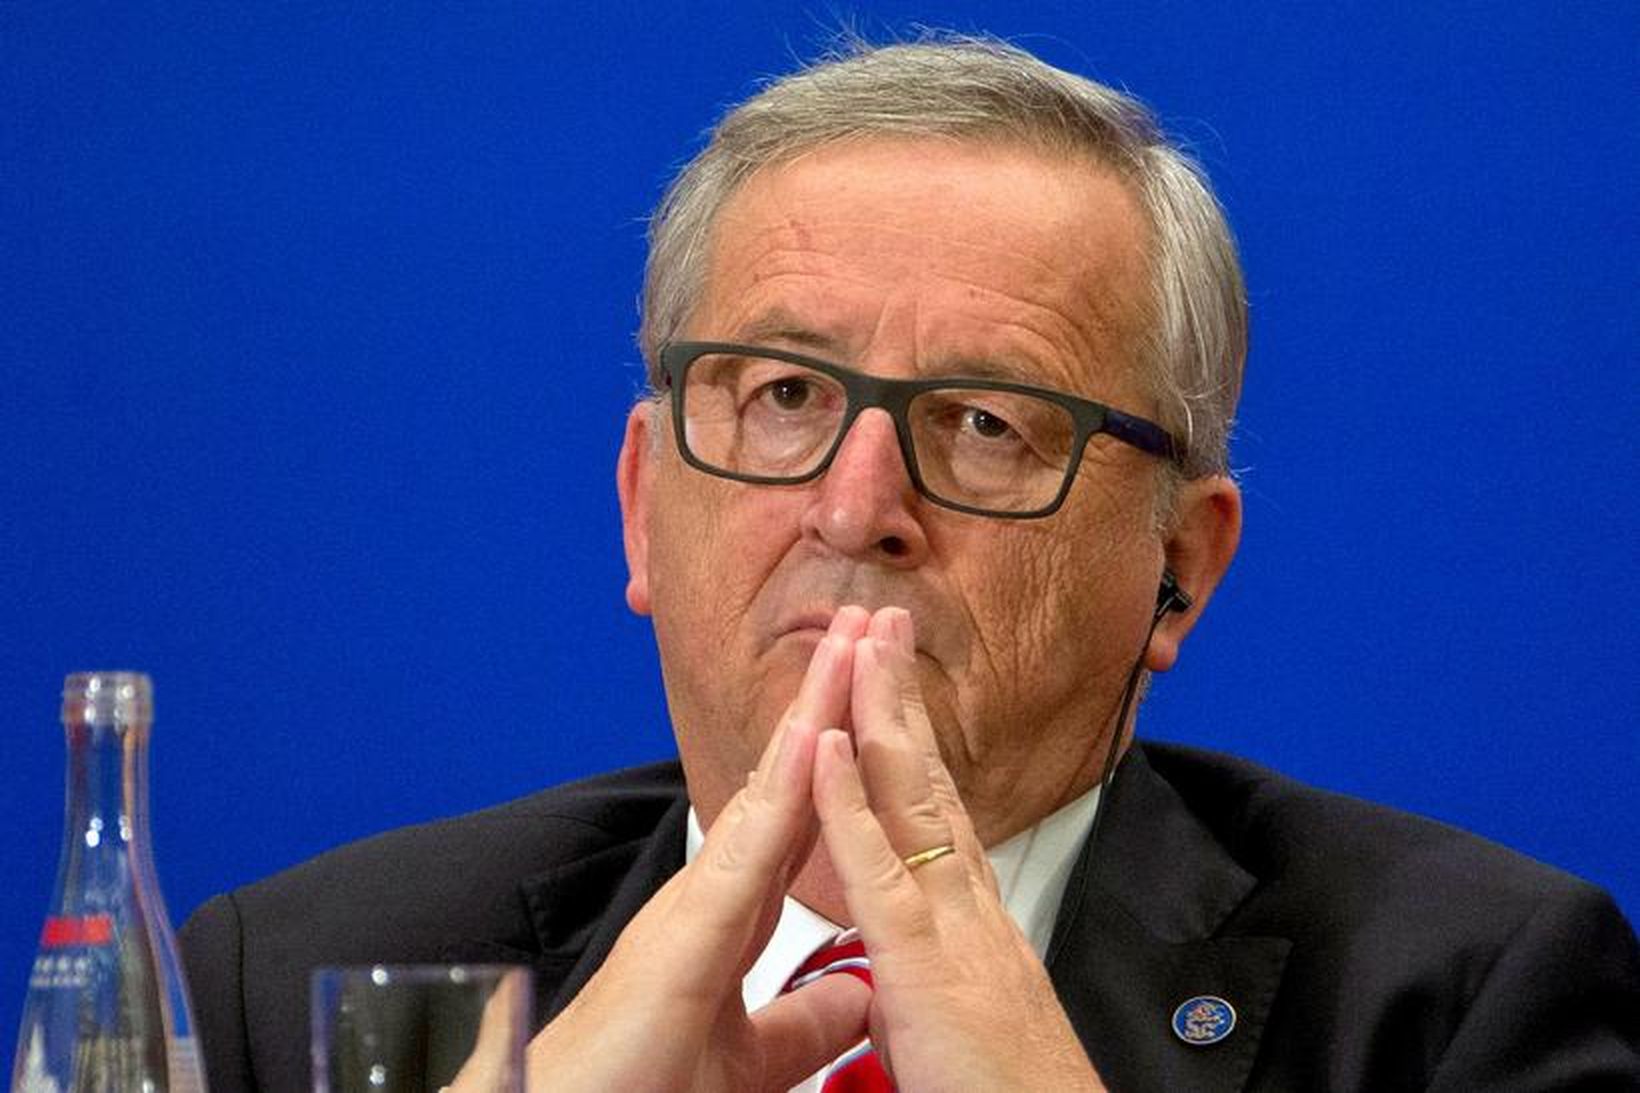 Jean-Claude Juncker, forseti framkvæmdastjórnar Evrópusambandsins.